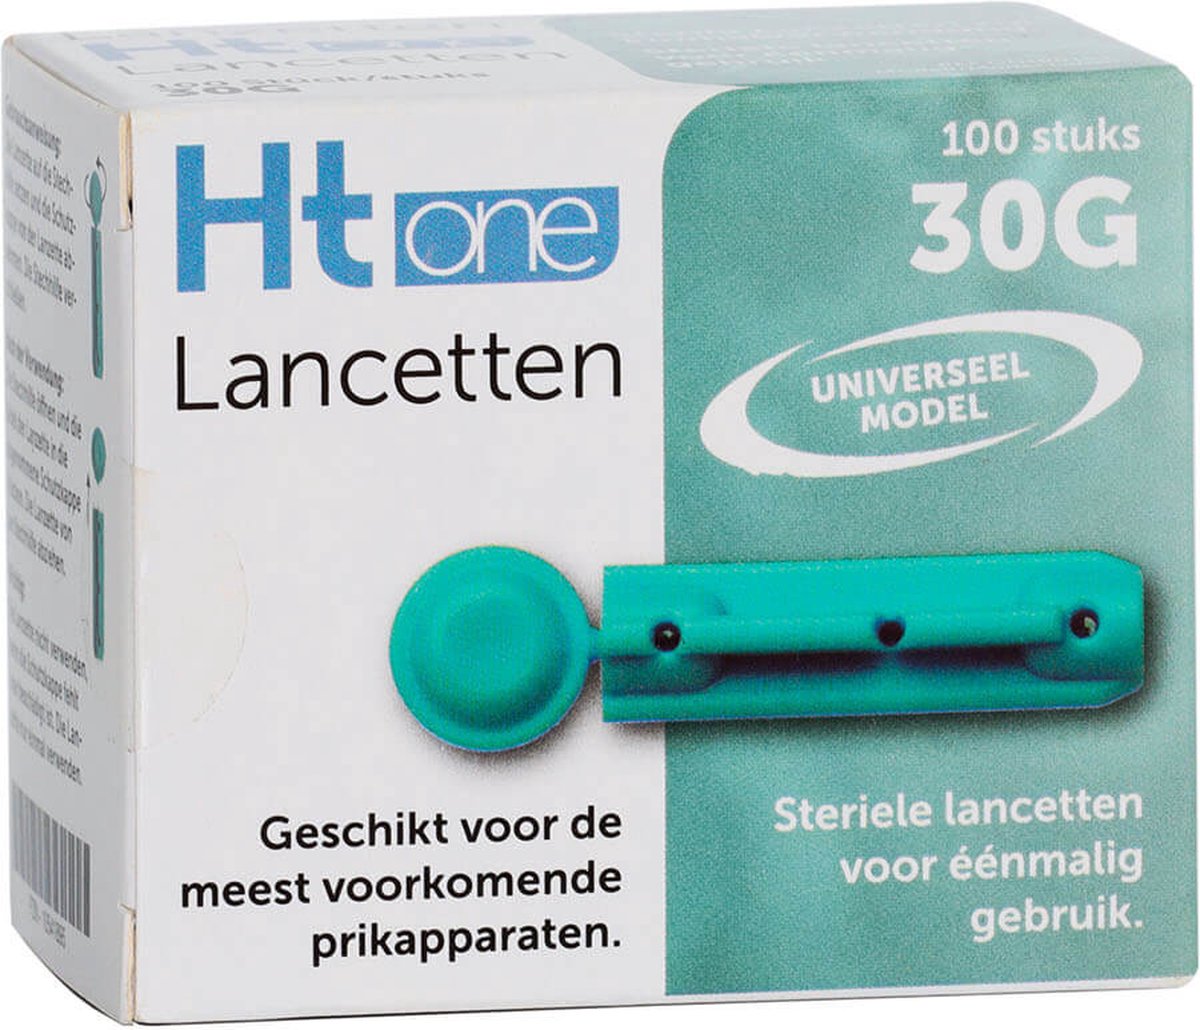 HT One Lancetten 30G - 100 stuks HT One - Voor het prikken van capillair bloed - 30 Gauge - Ht One